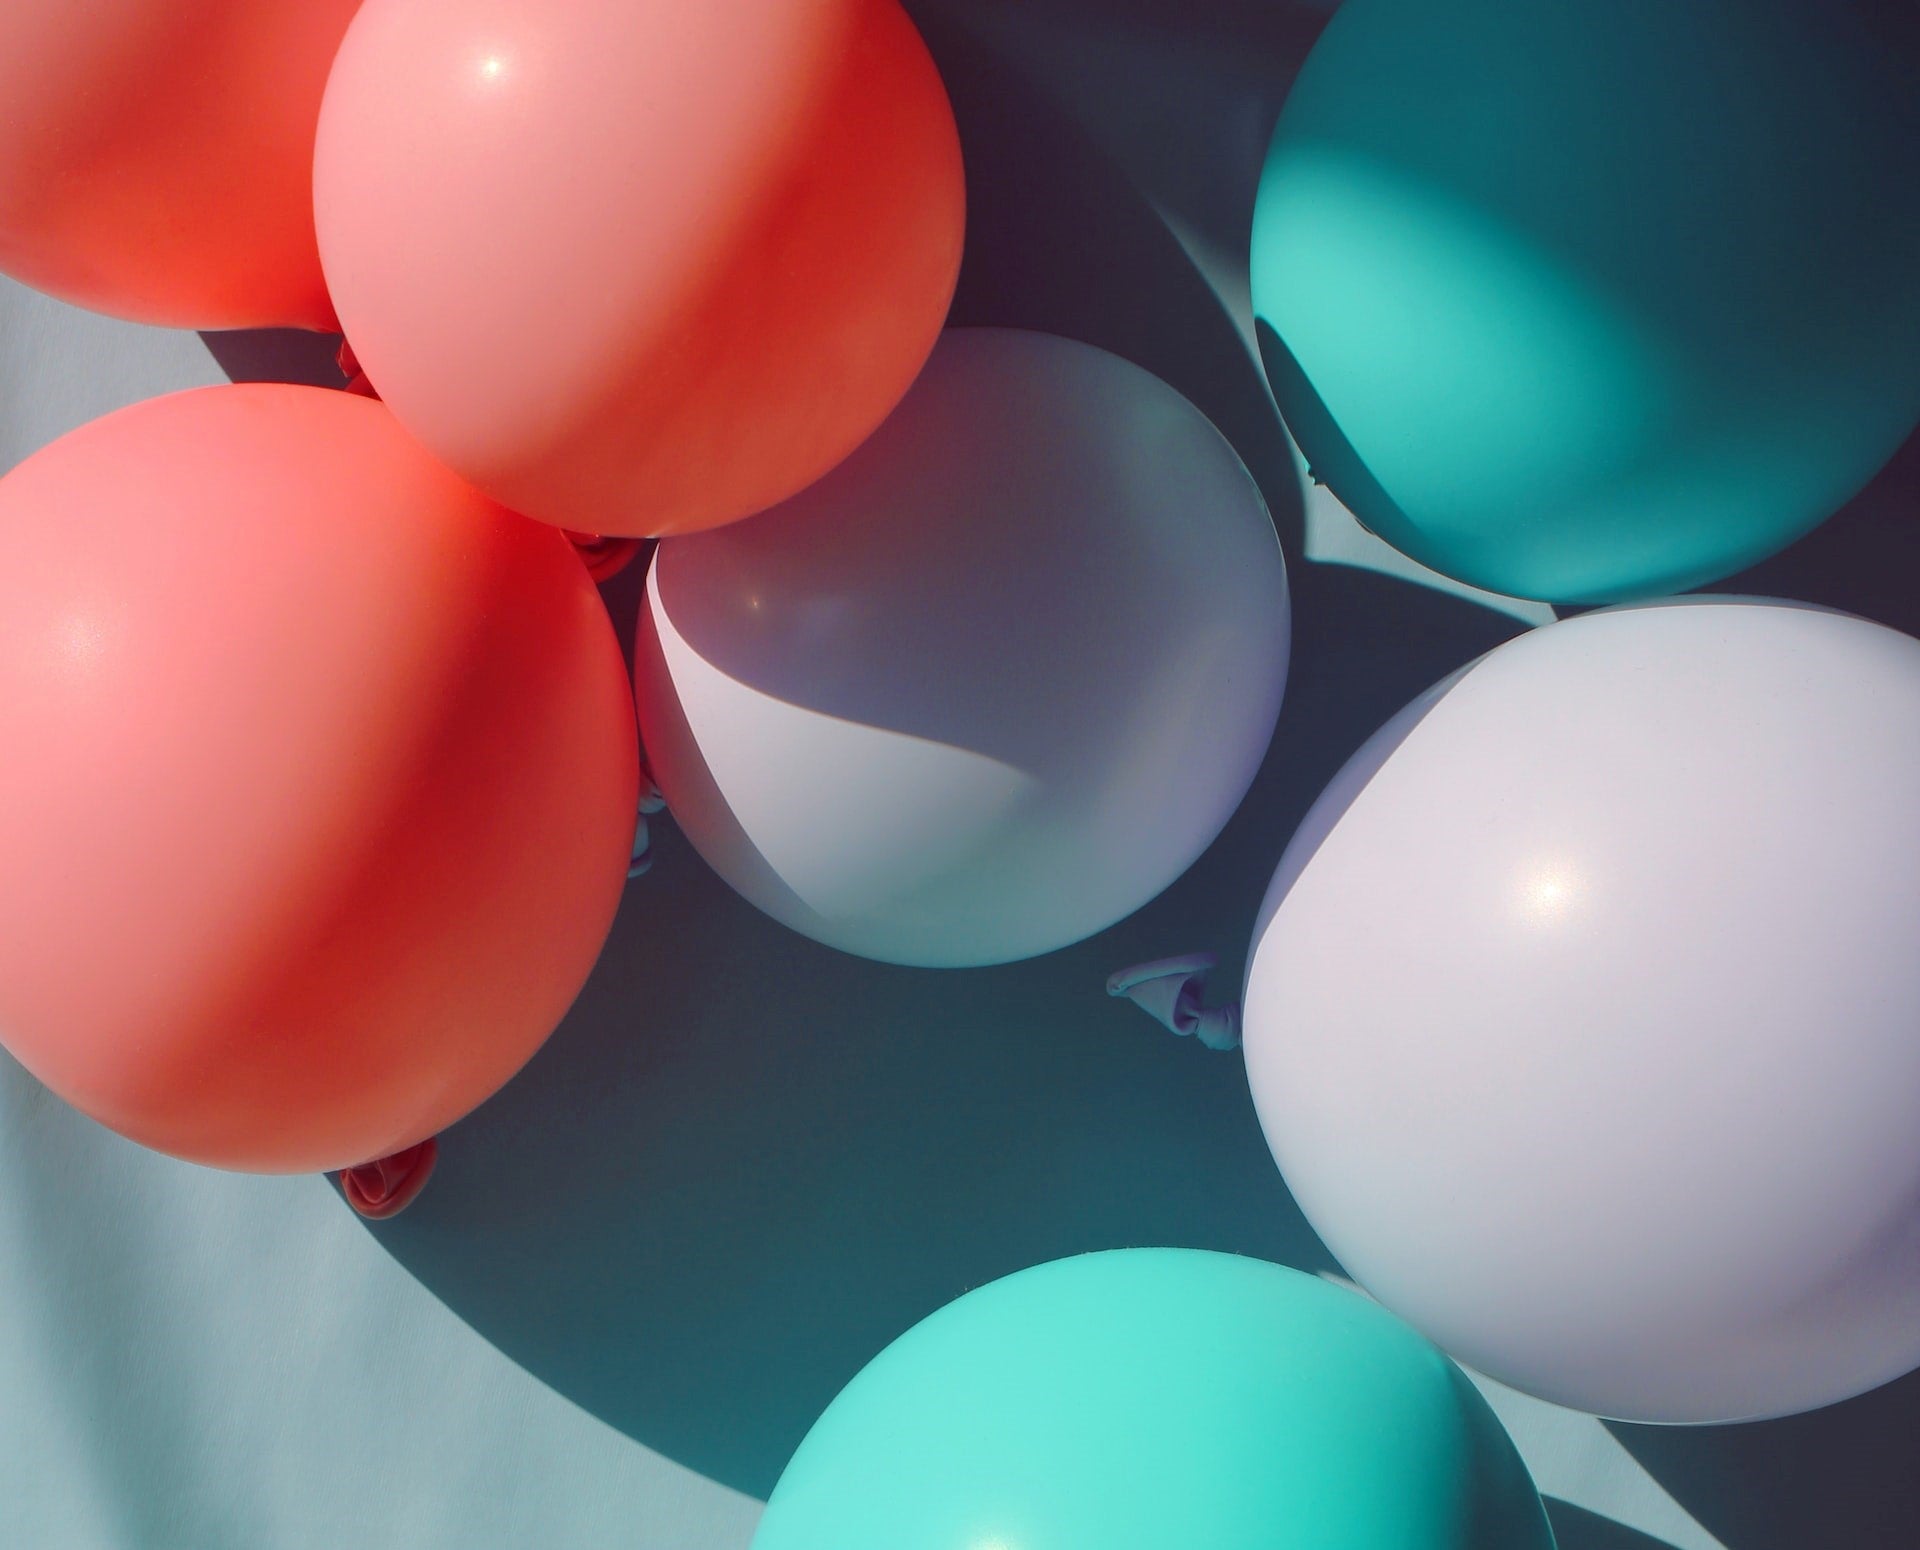 Baile de globos como juego de carnaval